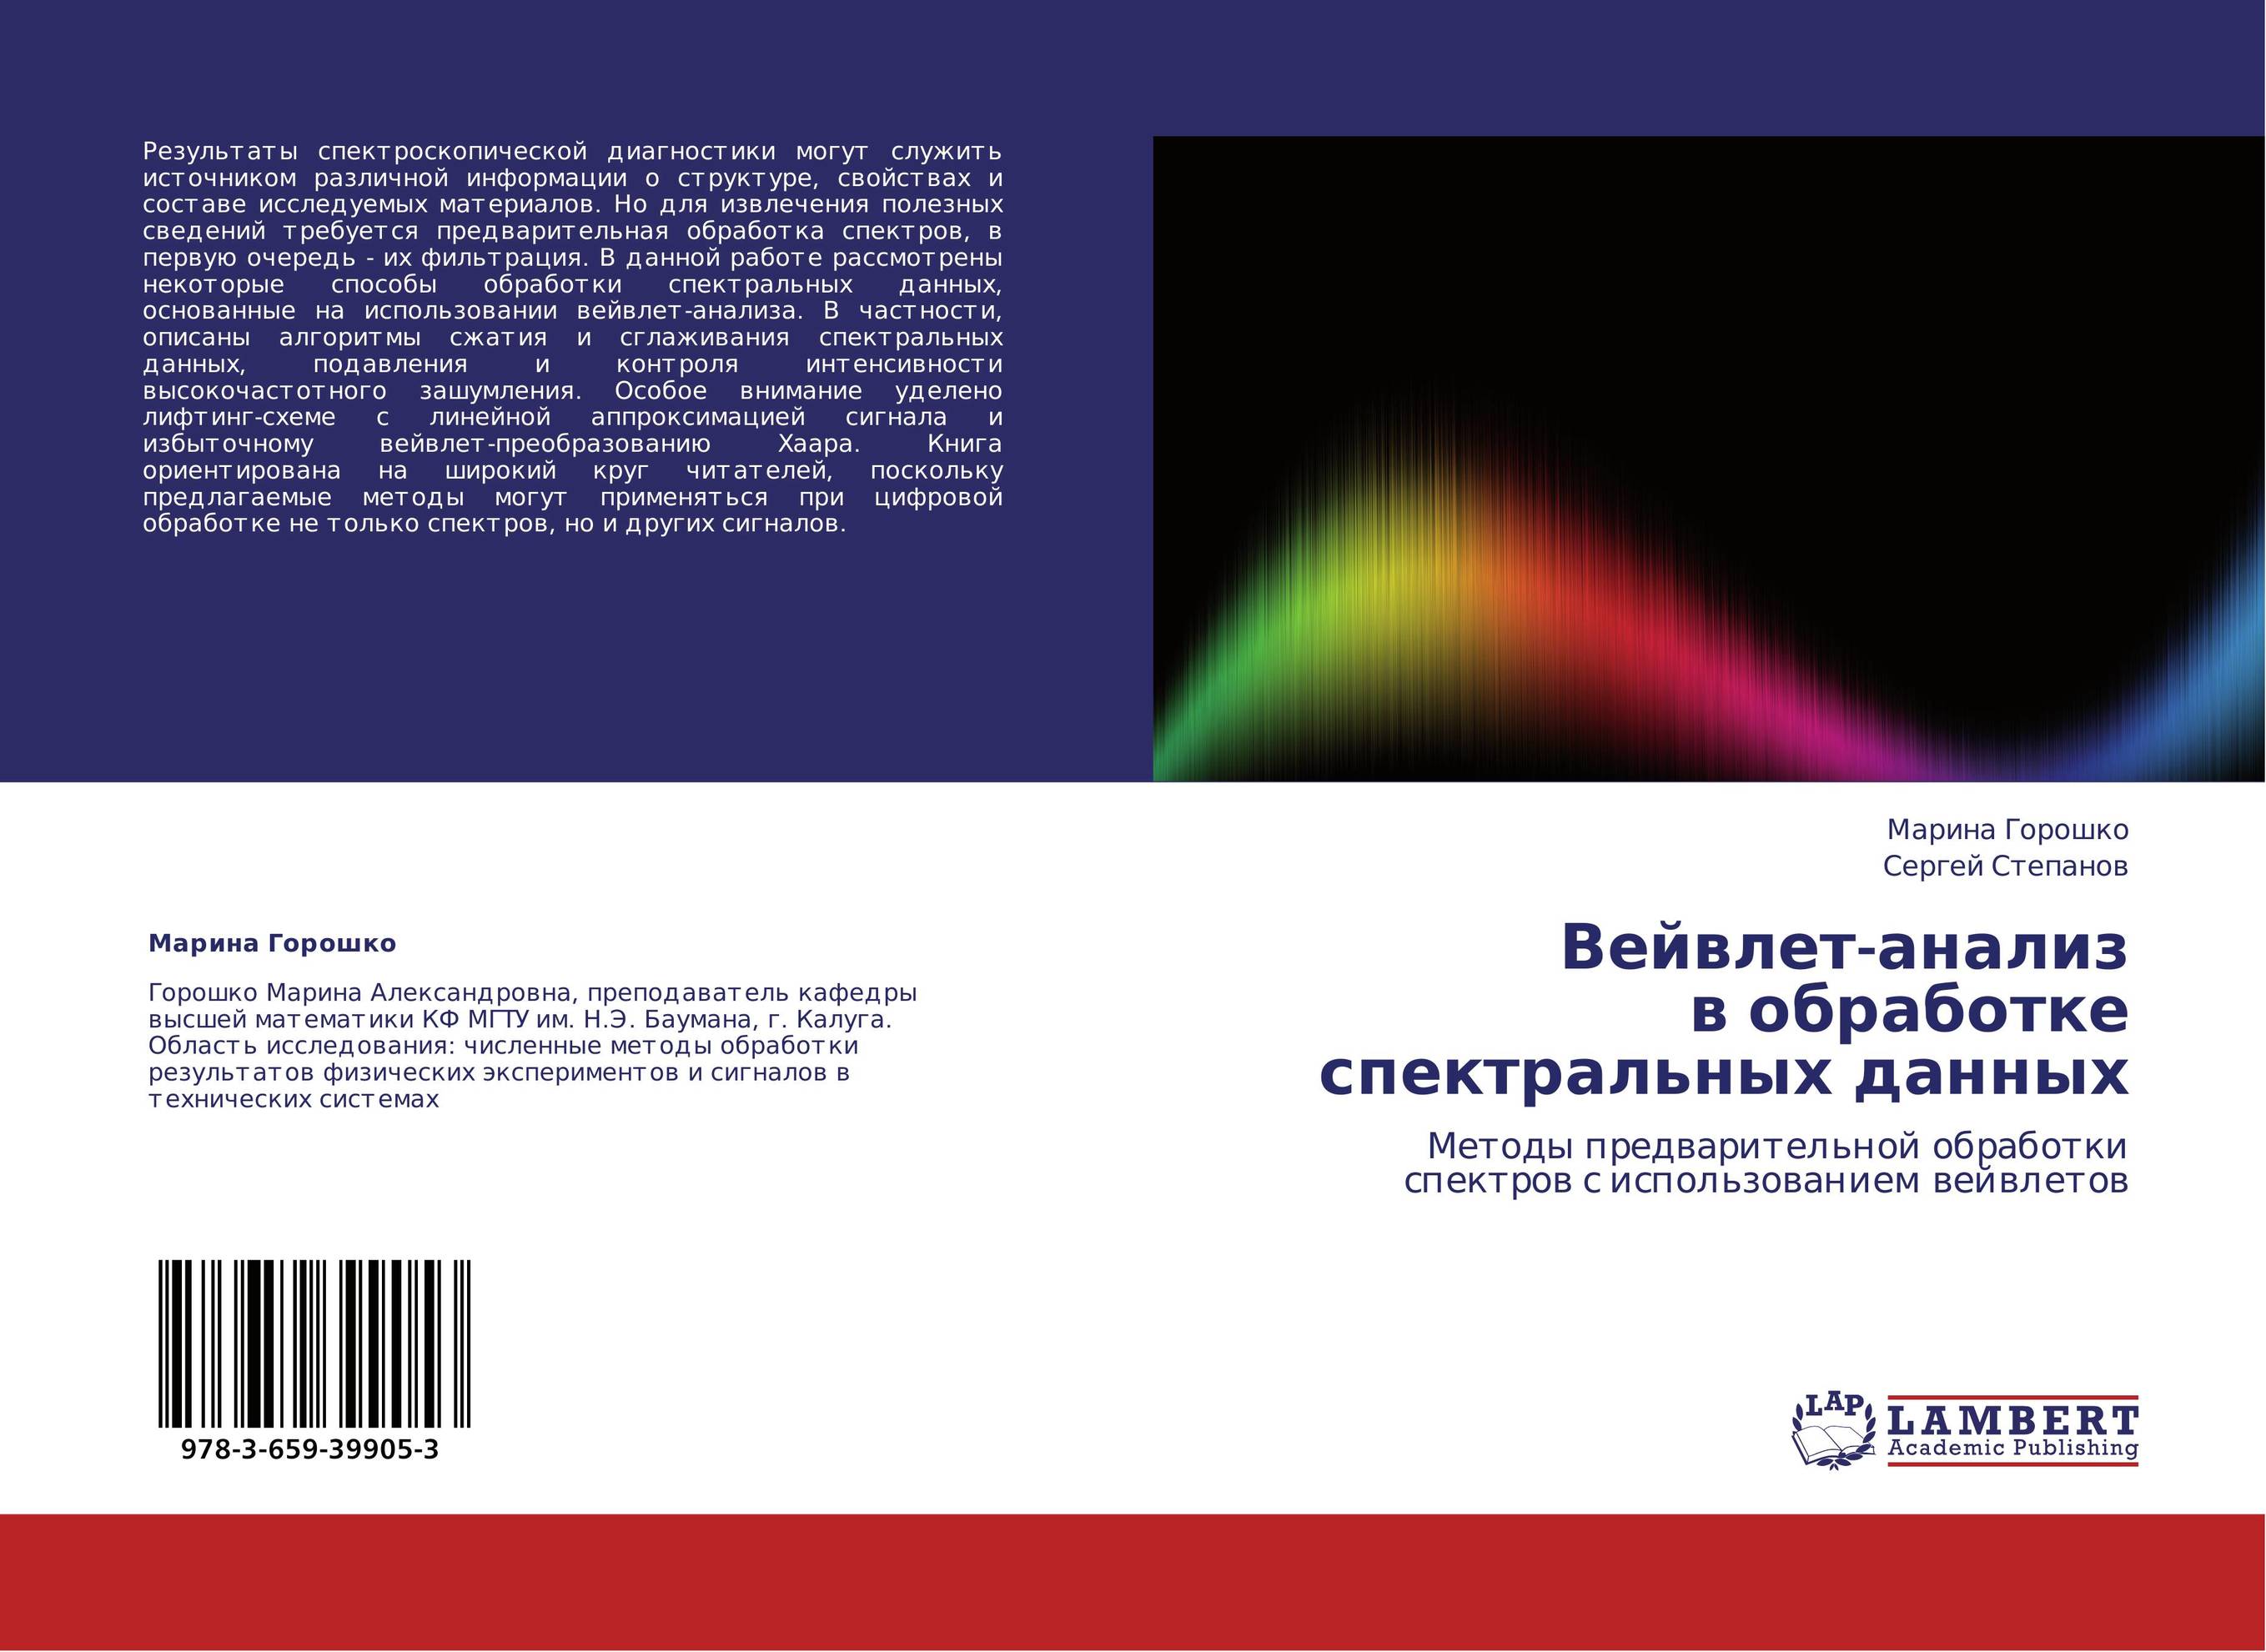 Вейвлет-анализ в обработке спектральных данных. Методы предварительной обработки спектров с использованием вейвлетов.